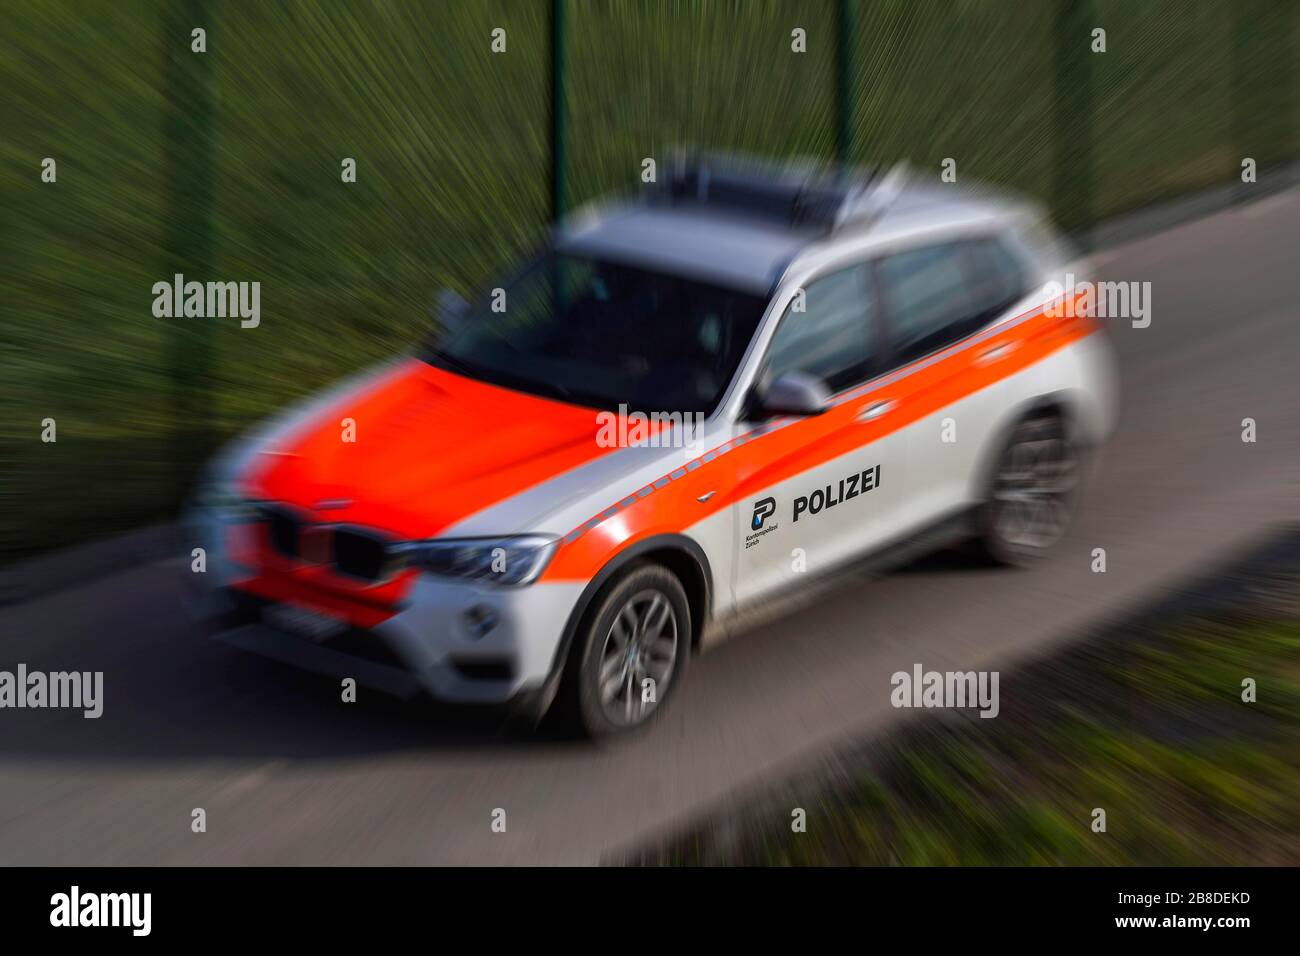 Wischmuster Polizeiwagen Kantonspolizei Zürich, Schweiz Stockfotografie -  Alamy